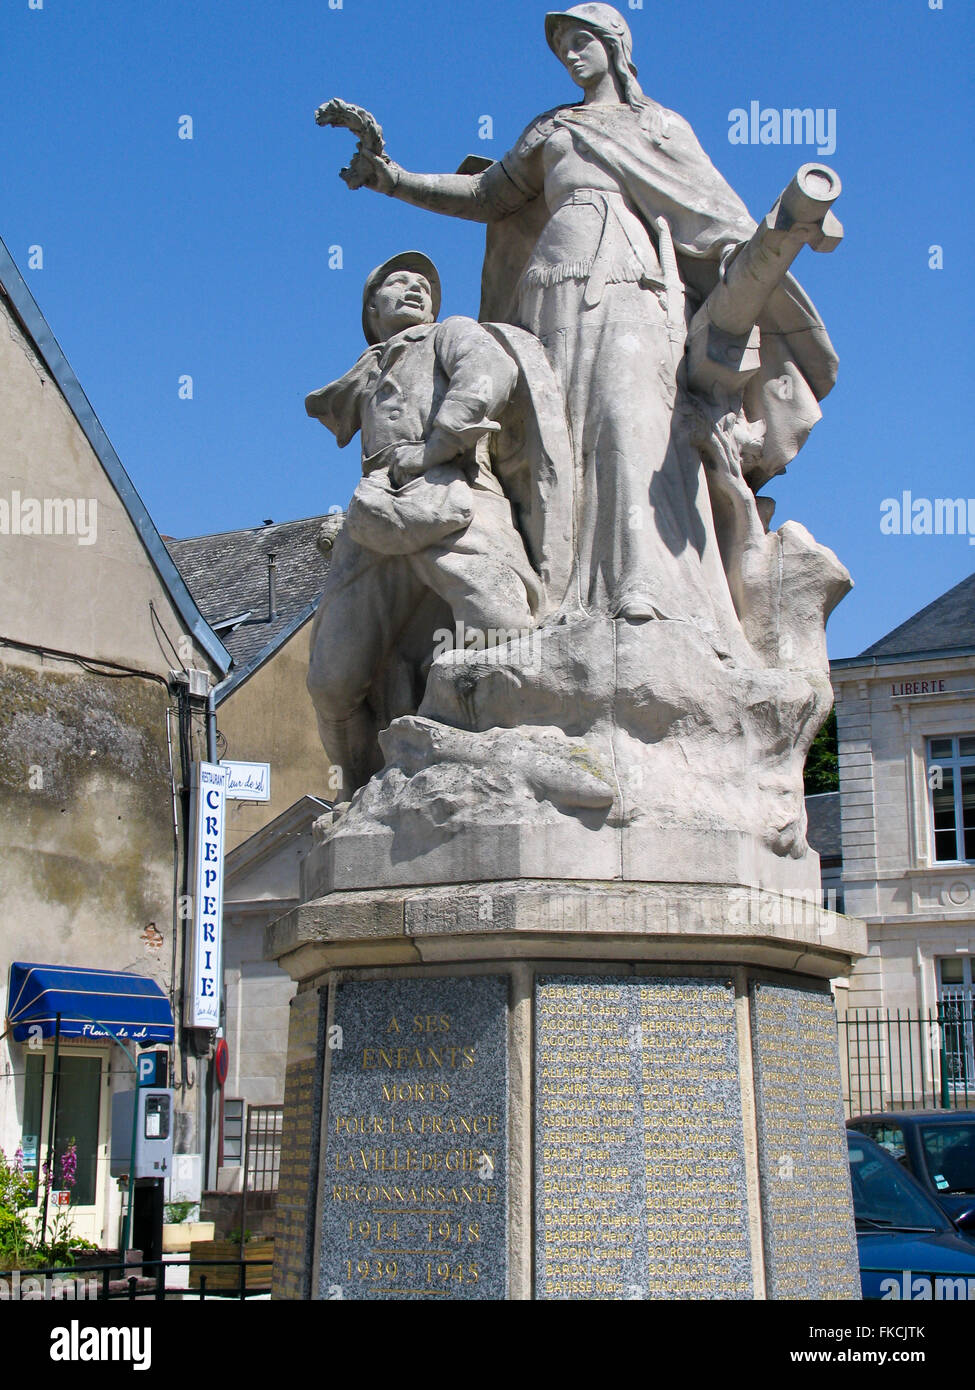 Un monument en marbre commémorant les morts pendant la Seconde Guerre mondiale, l. Banque D'Images